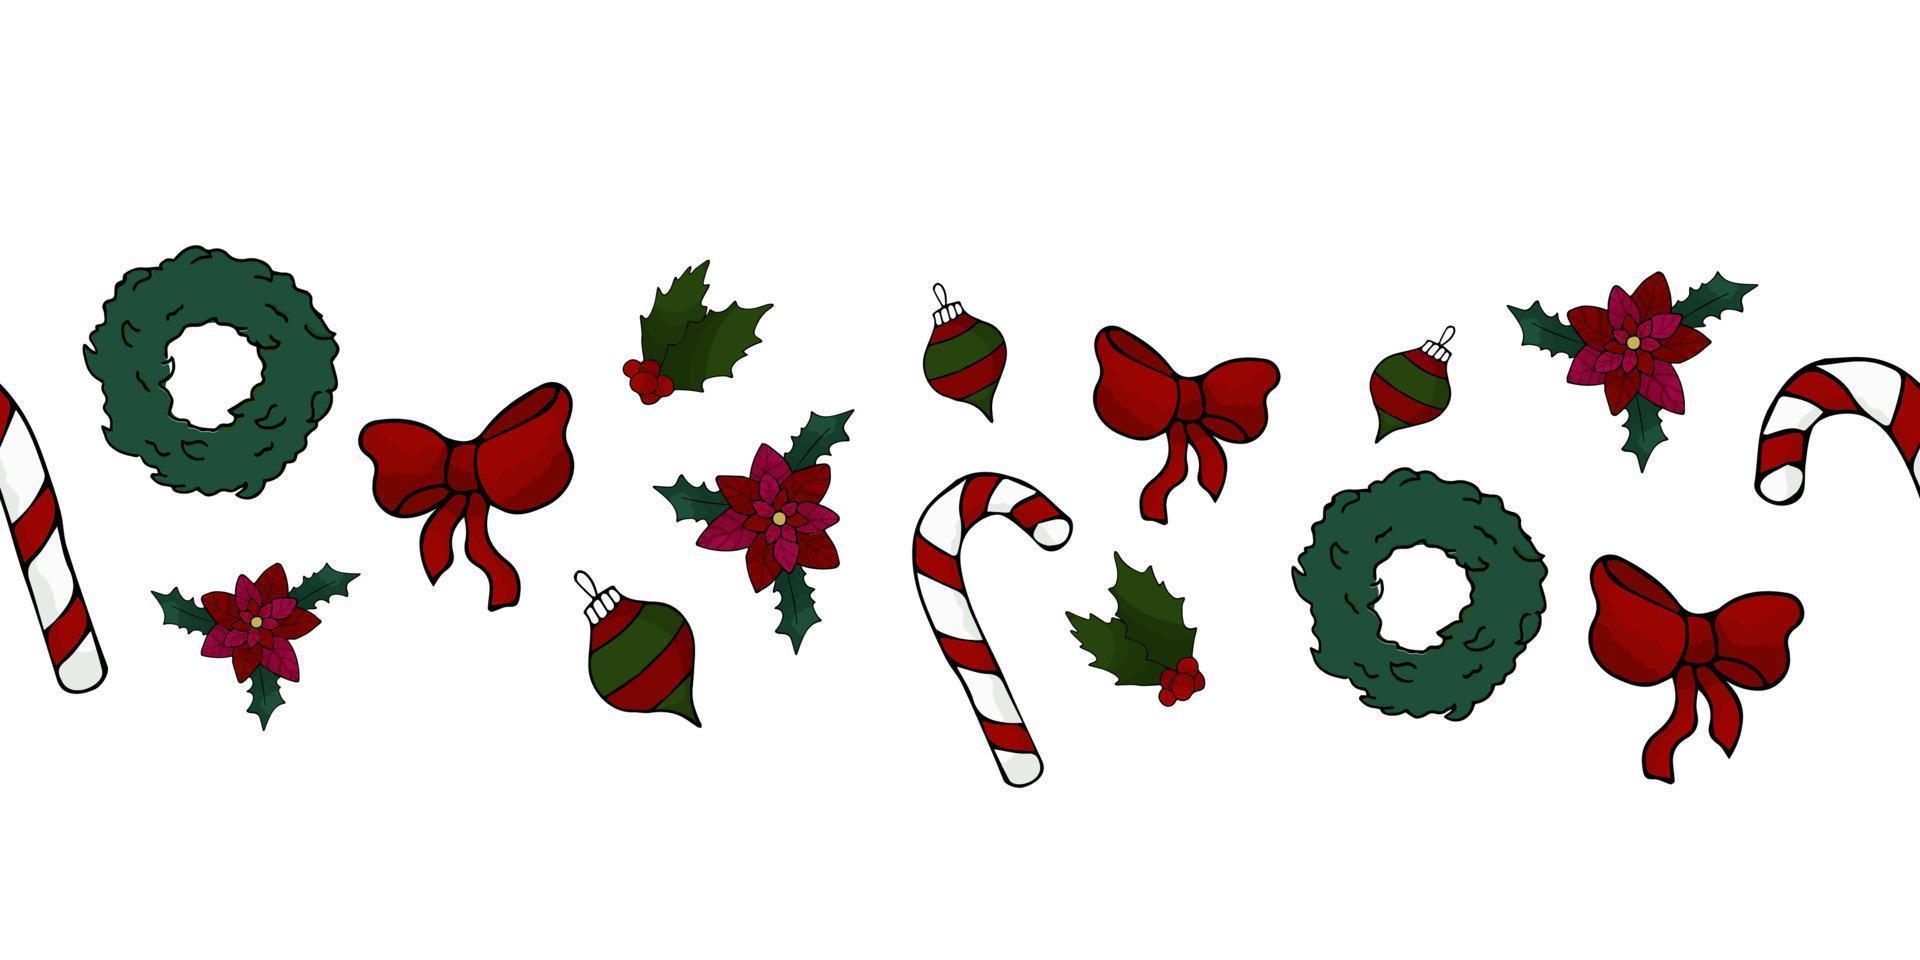 Fröhliche Weihnachten. Grenzschablone mit Stechpalme, Kranz, Süßigkeiten. Handzeichnungsstil. Vektor-Illustration vektor